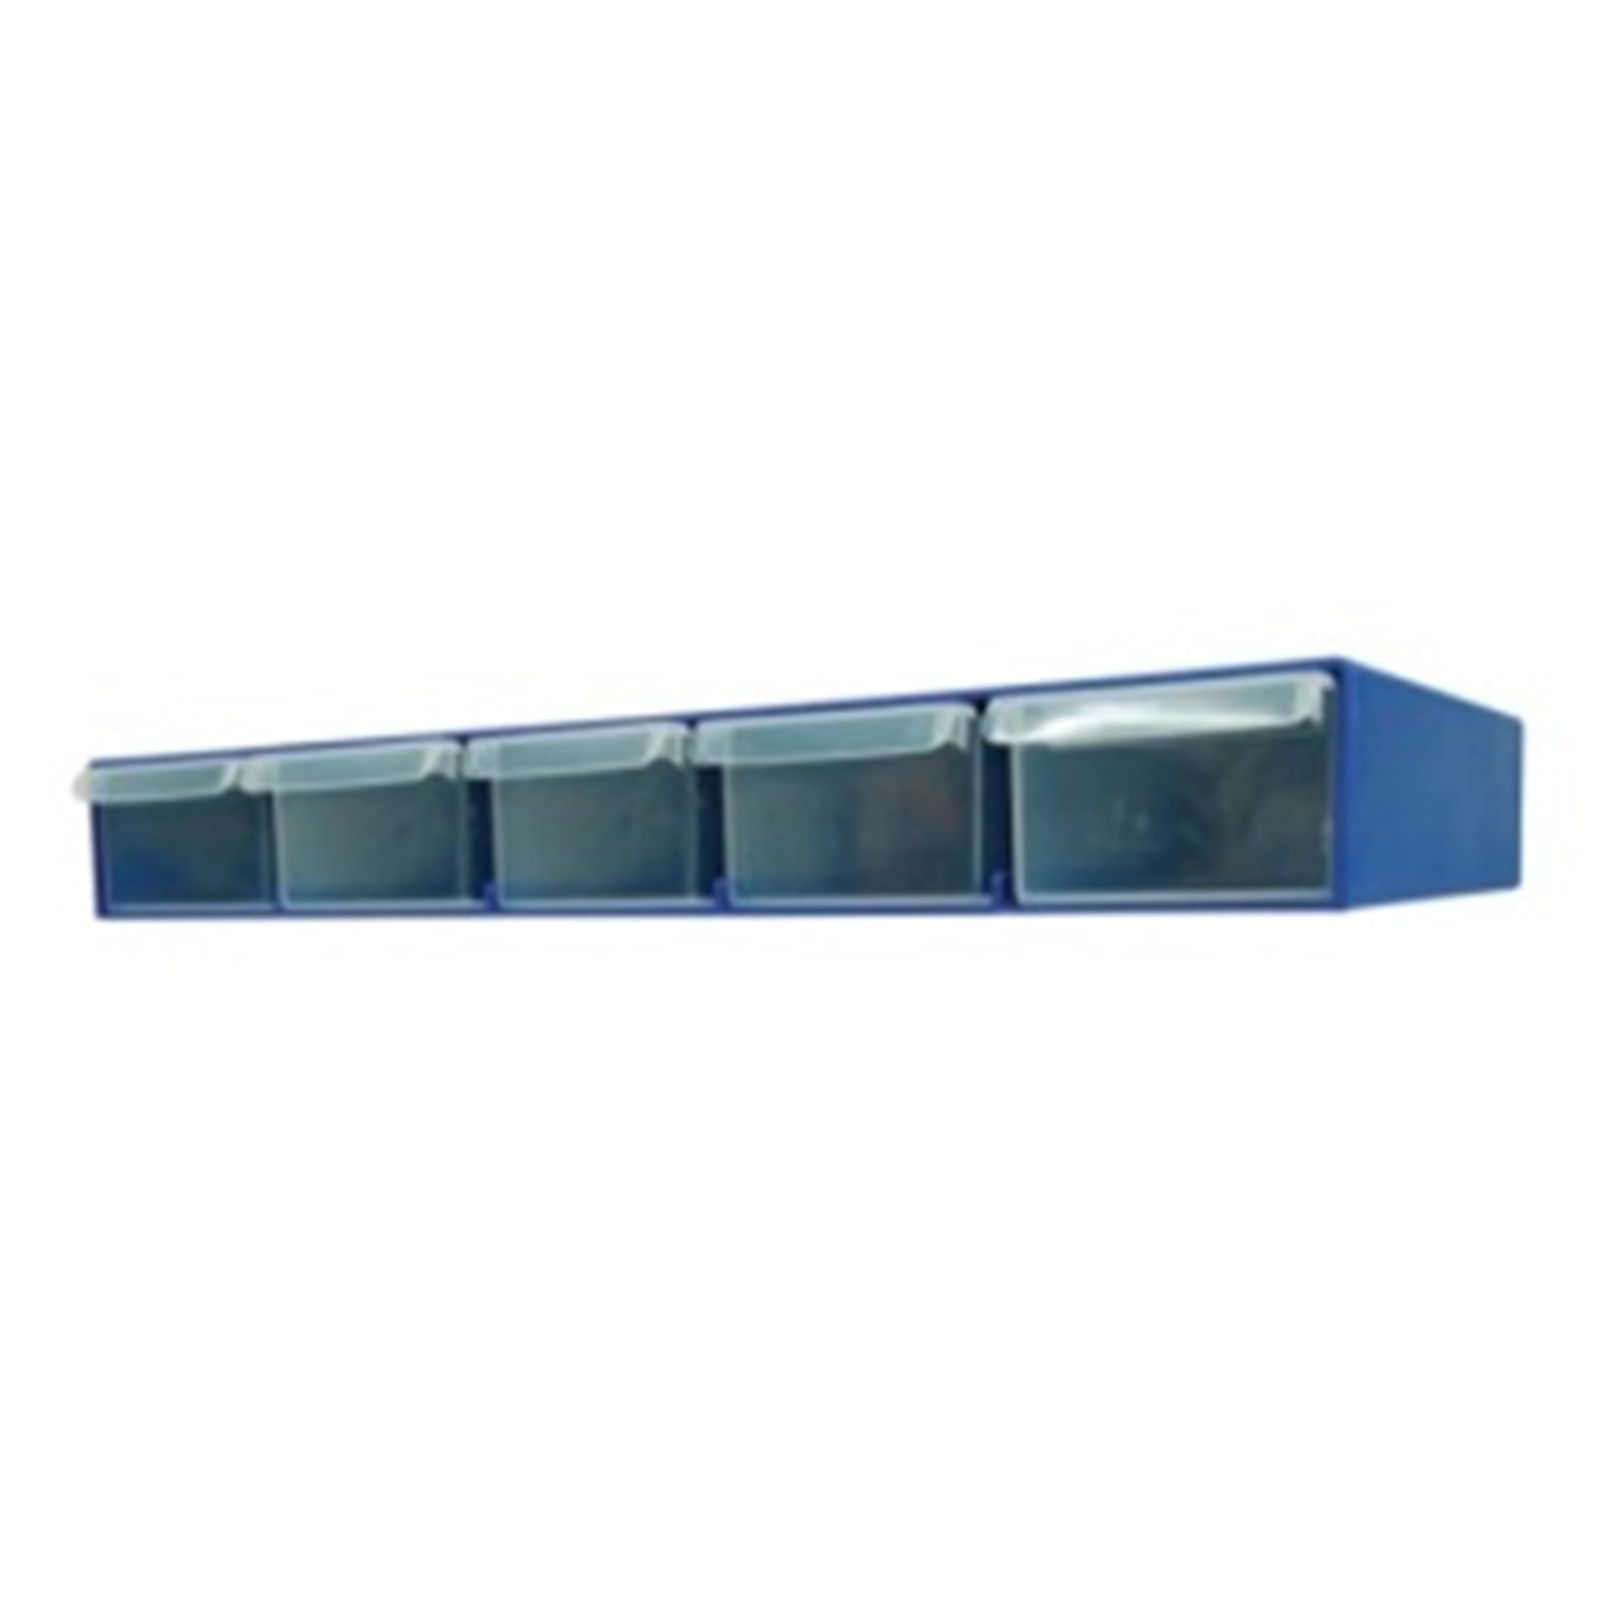 Handy Storage 5 Drawer Compartment Organiser